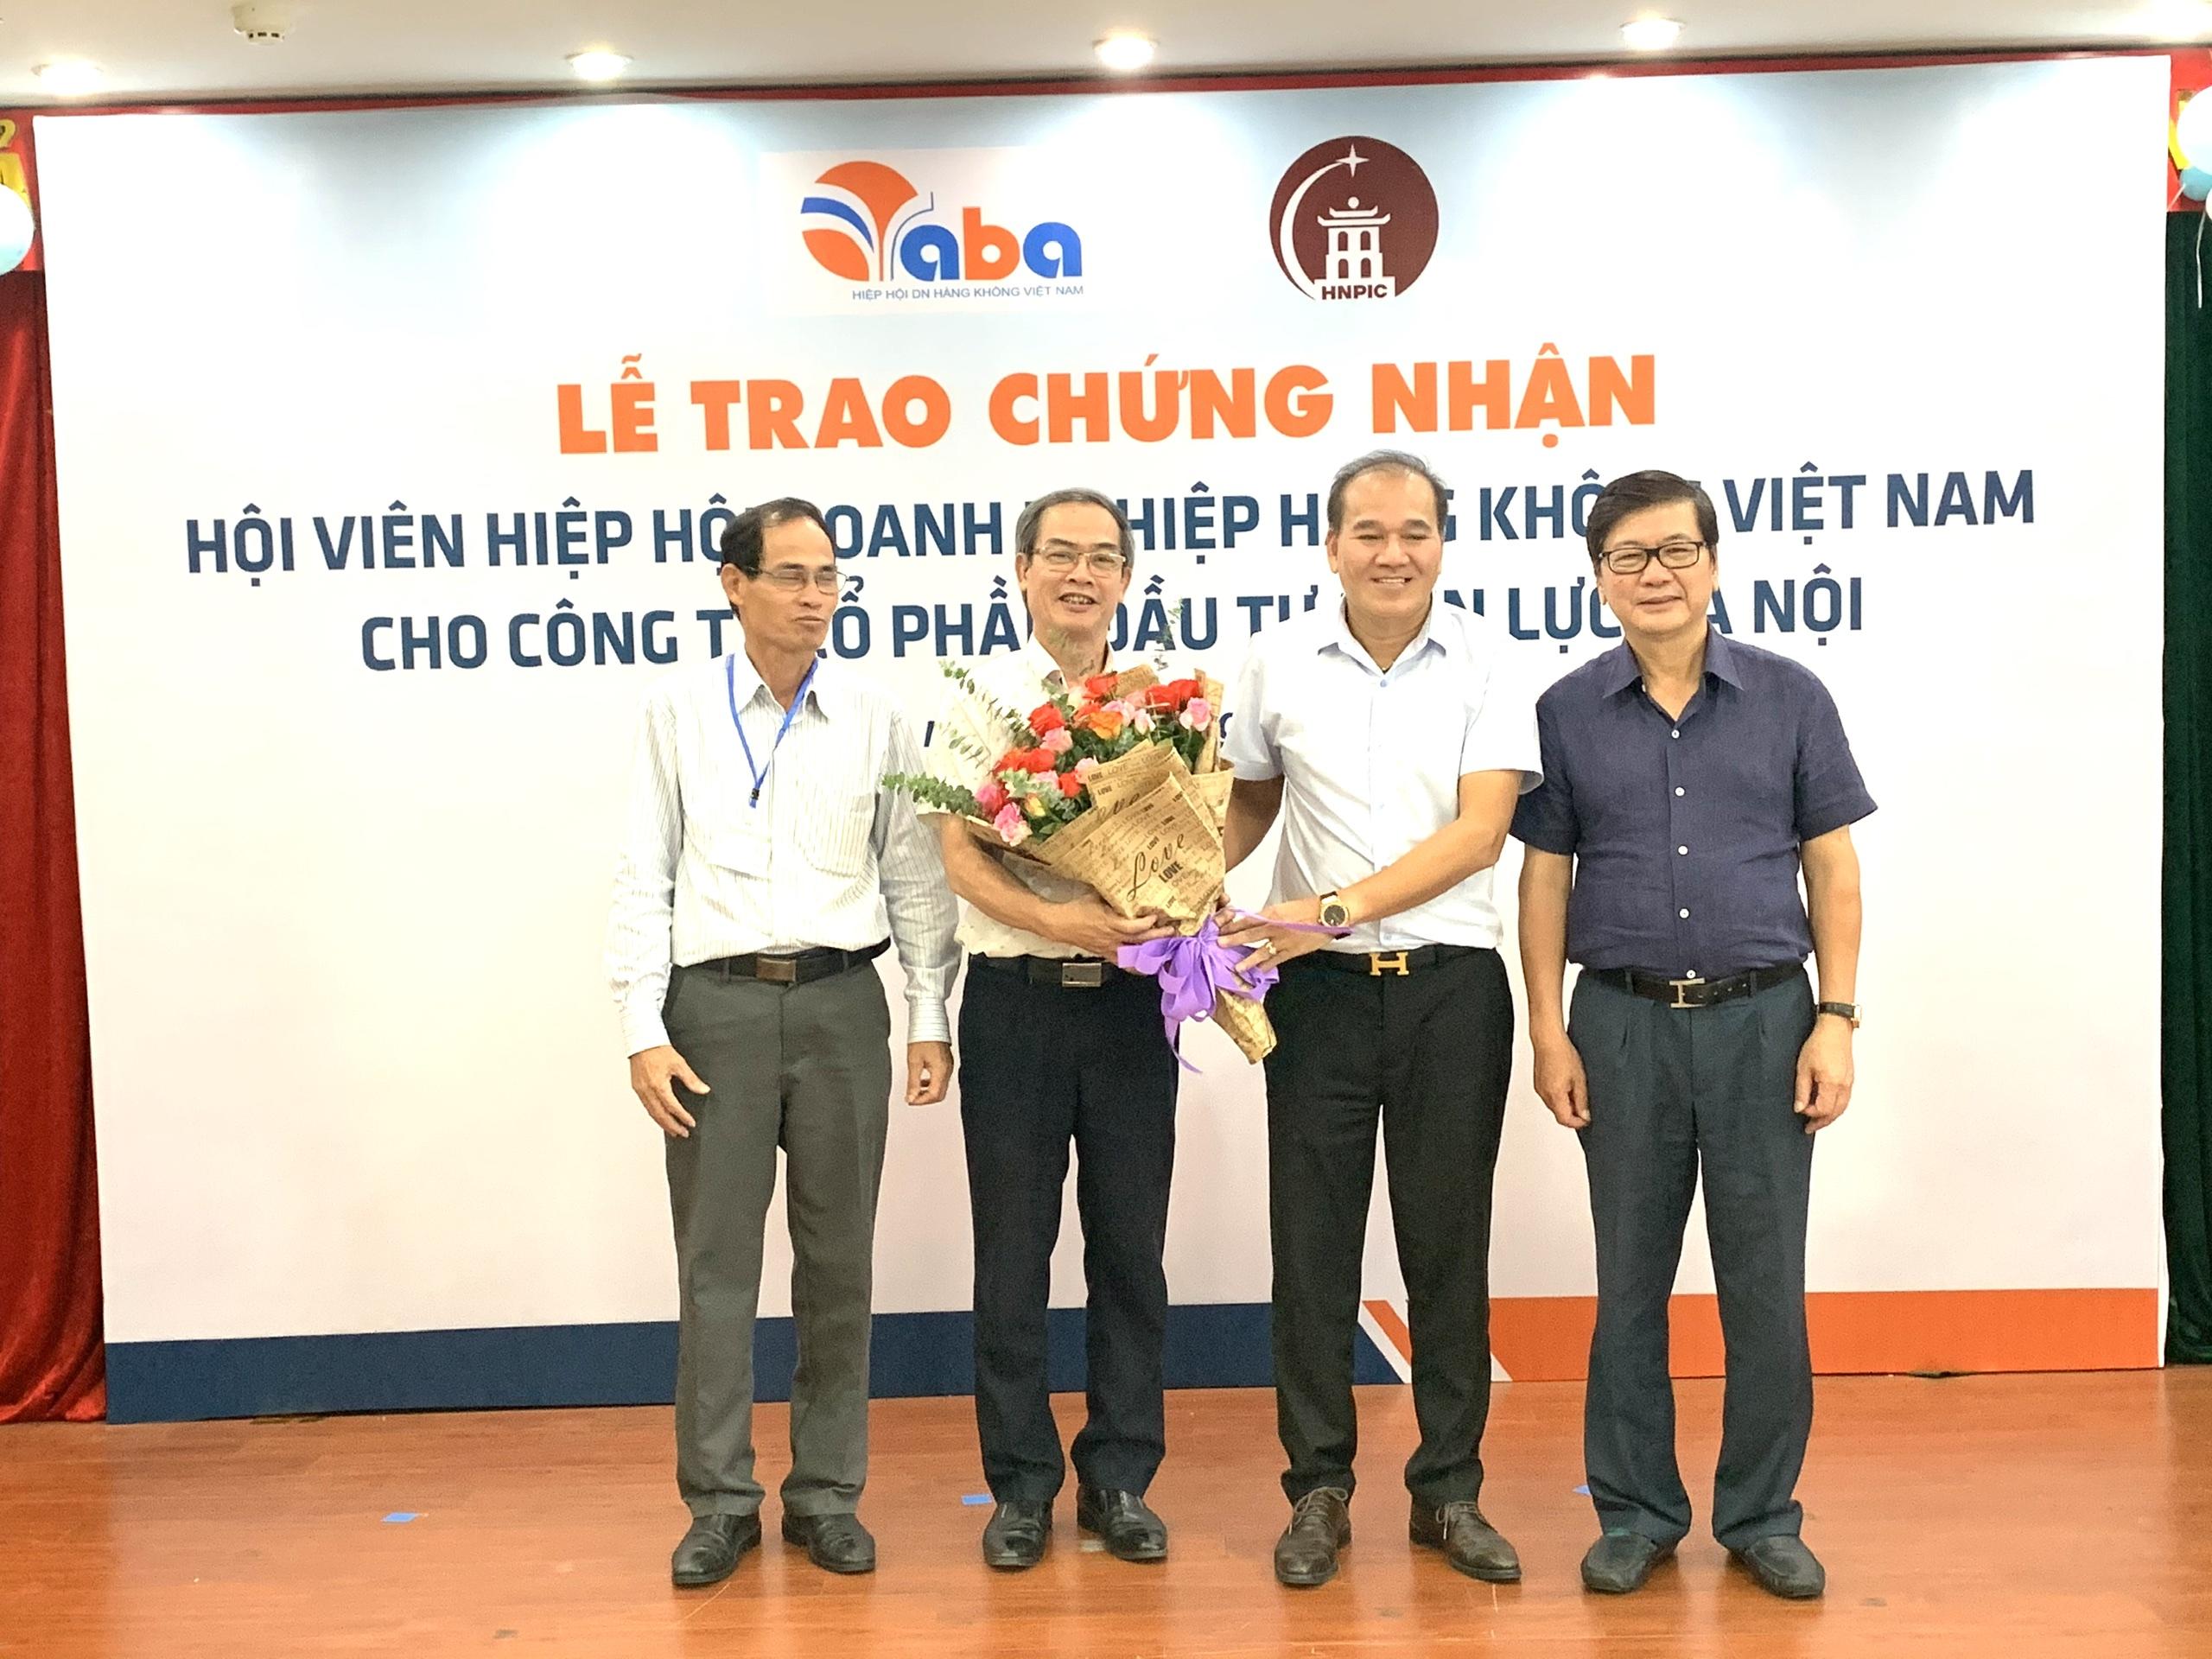 Hiệp hội doanh nghiệp hàng không Việt Nam thêm thành viên mới